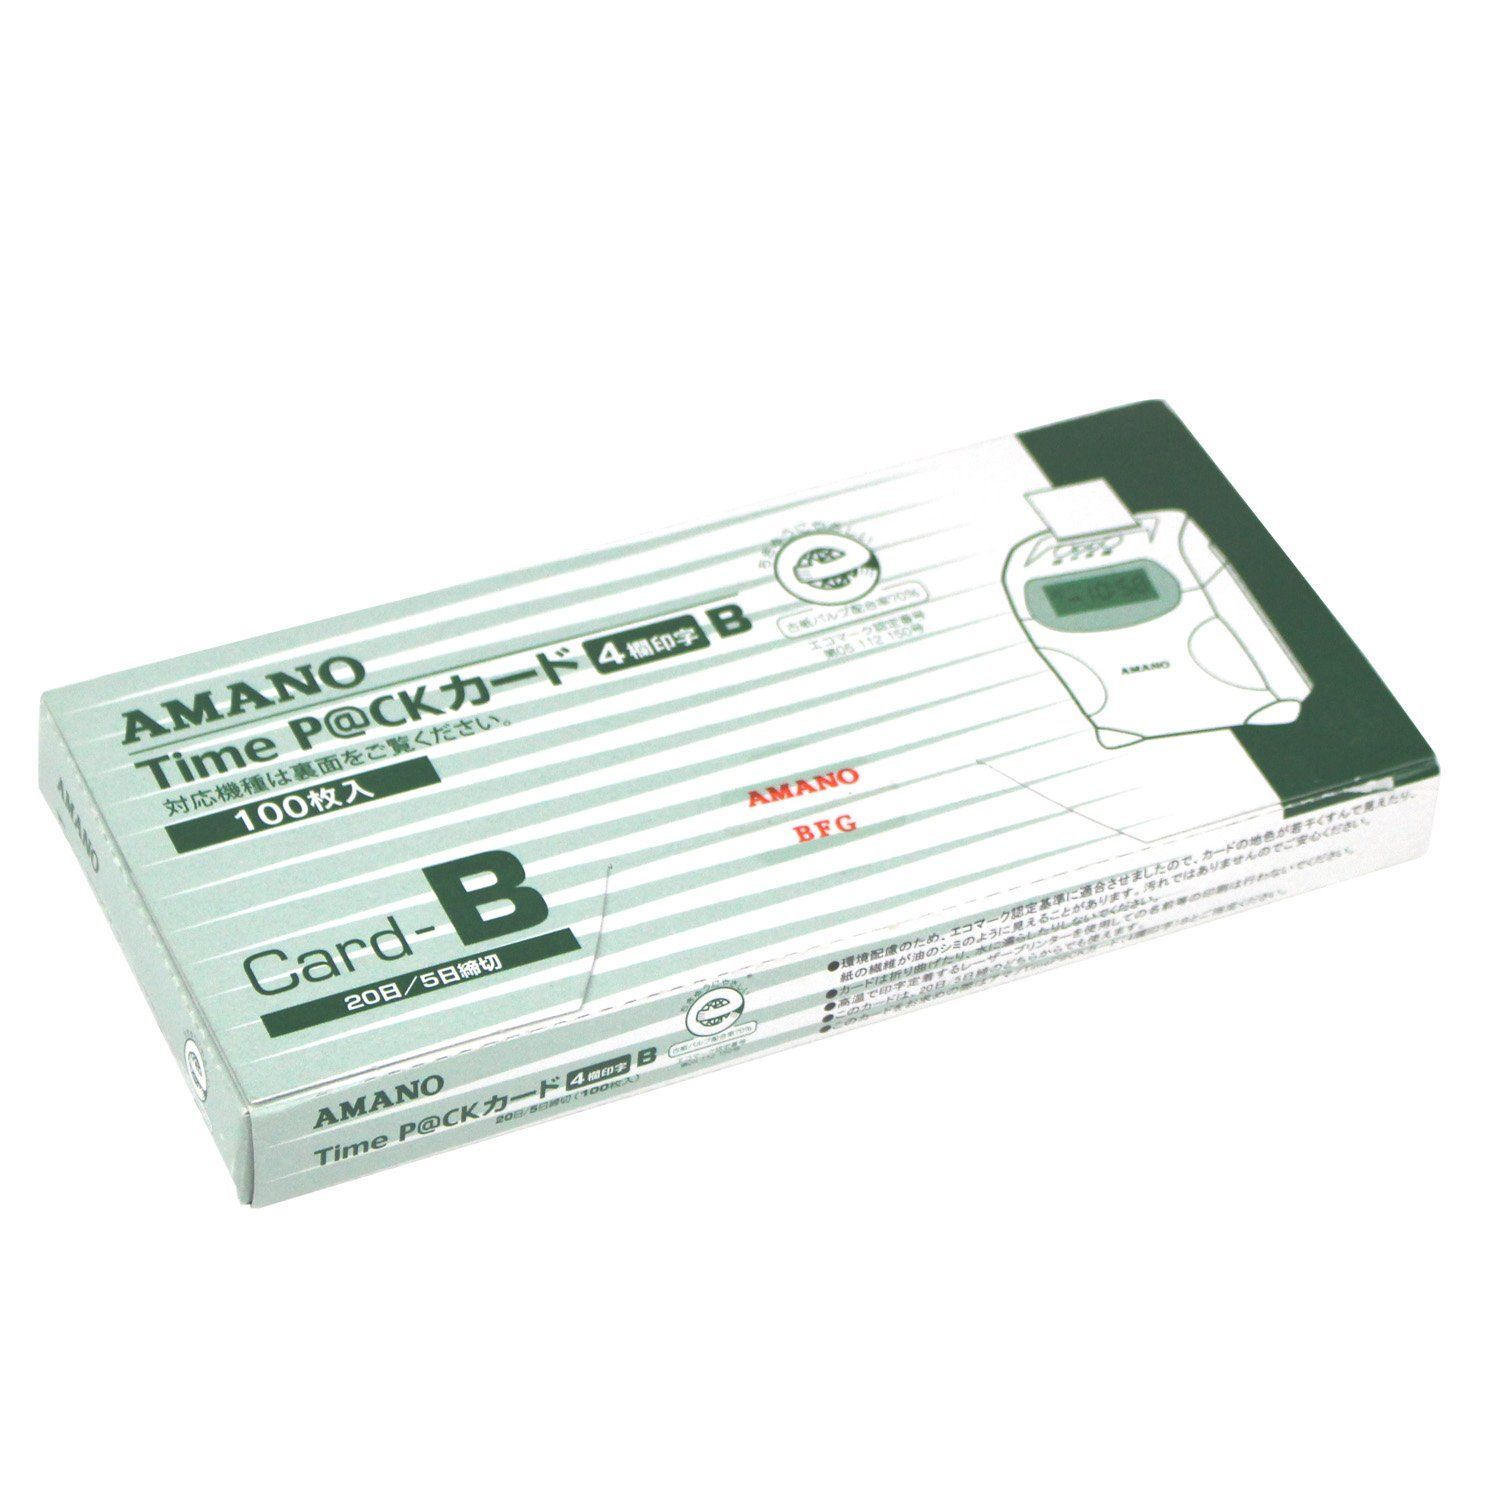 アマノ PJR専用タイムカード PJRカード 00048450まとめ買い3パックセット - 2